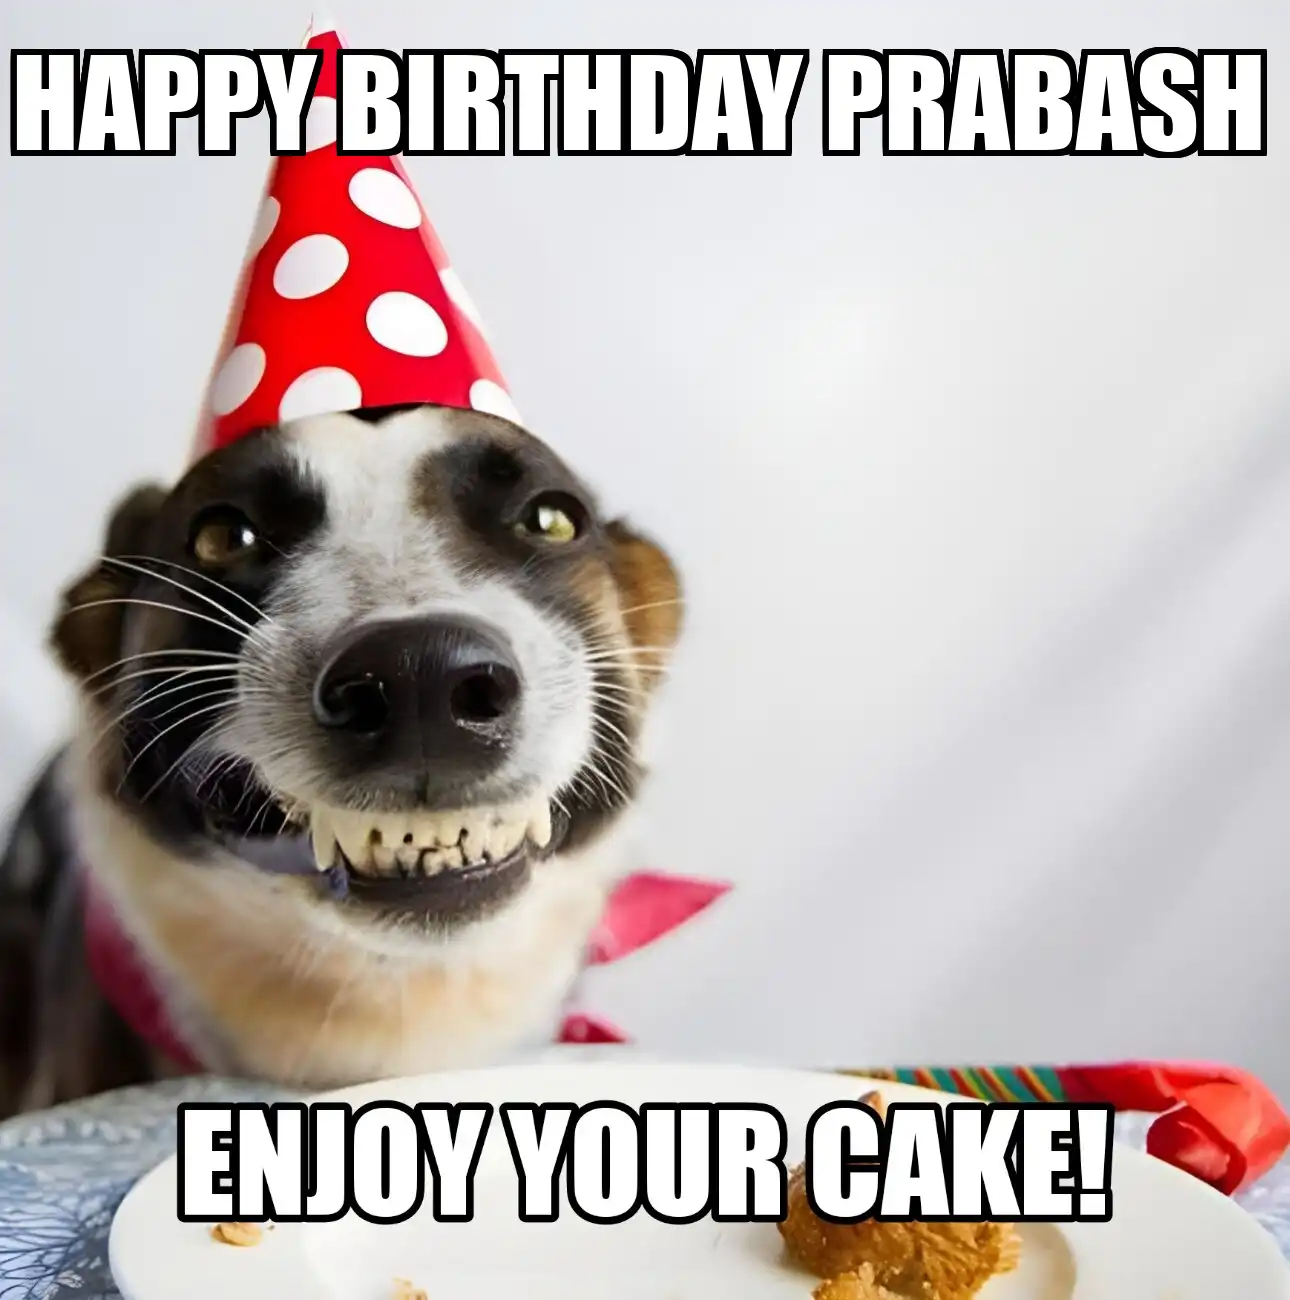 Happy Birthday Prabash Enjoy Your Cake Dog Meme